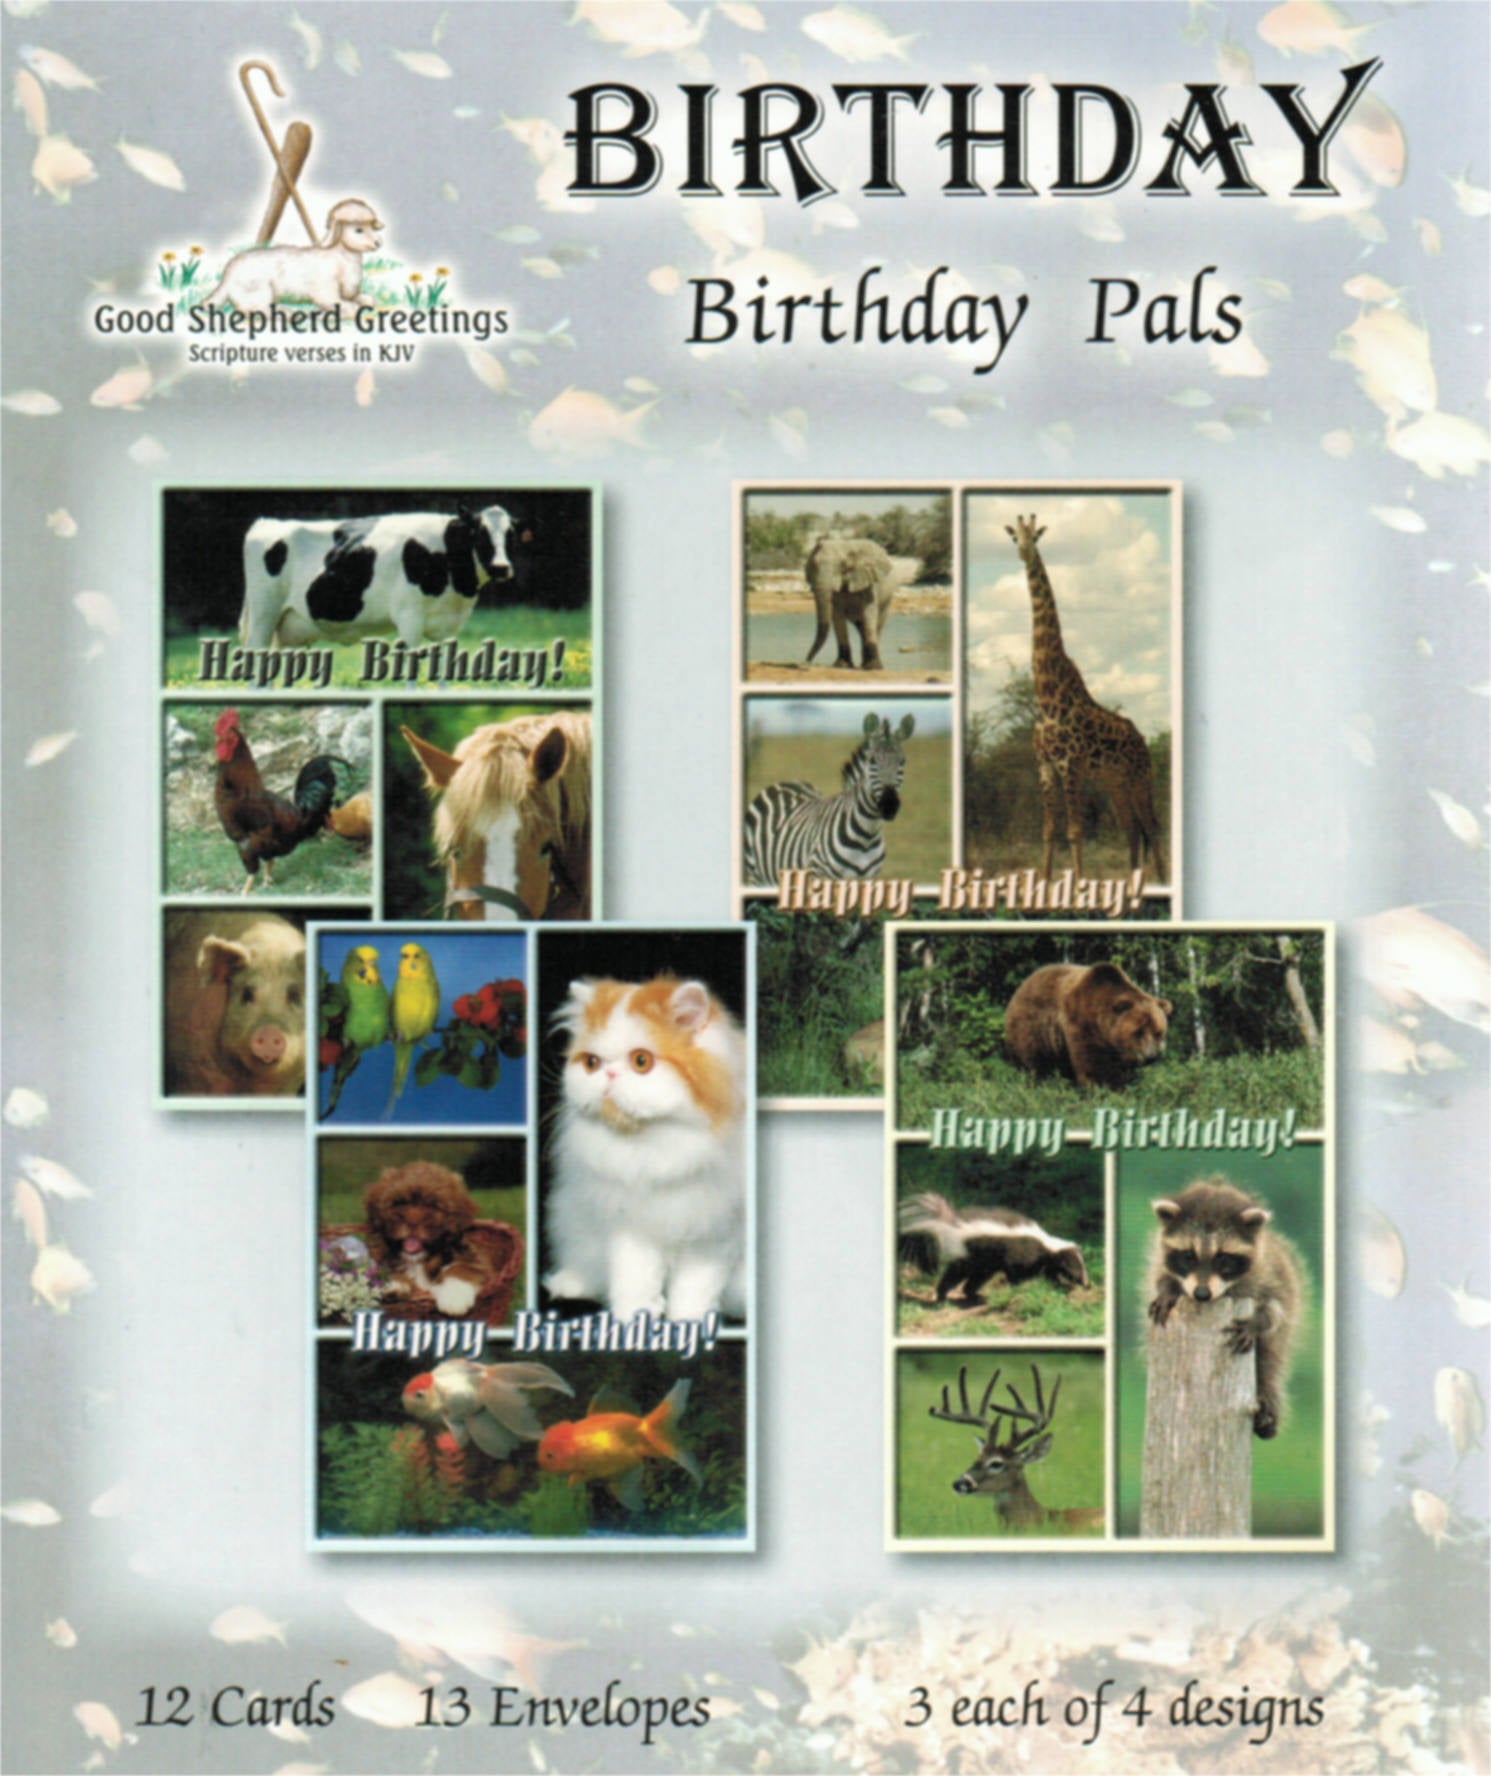 Good Shepherd Greetings - Birthday: Birthday Pals